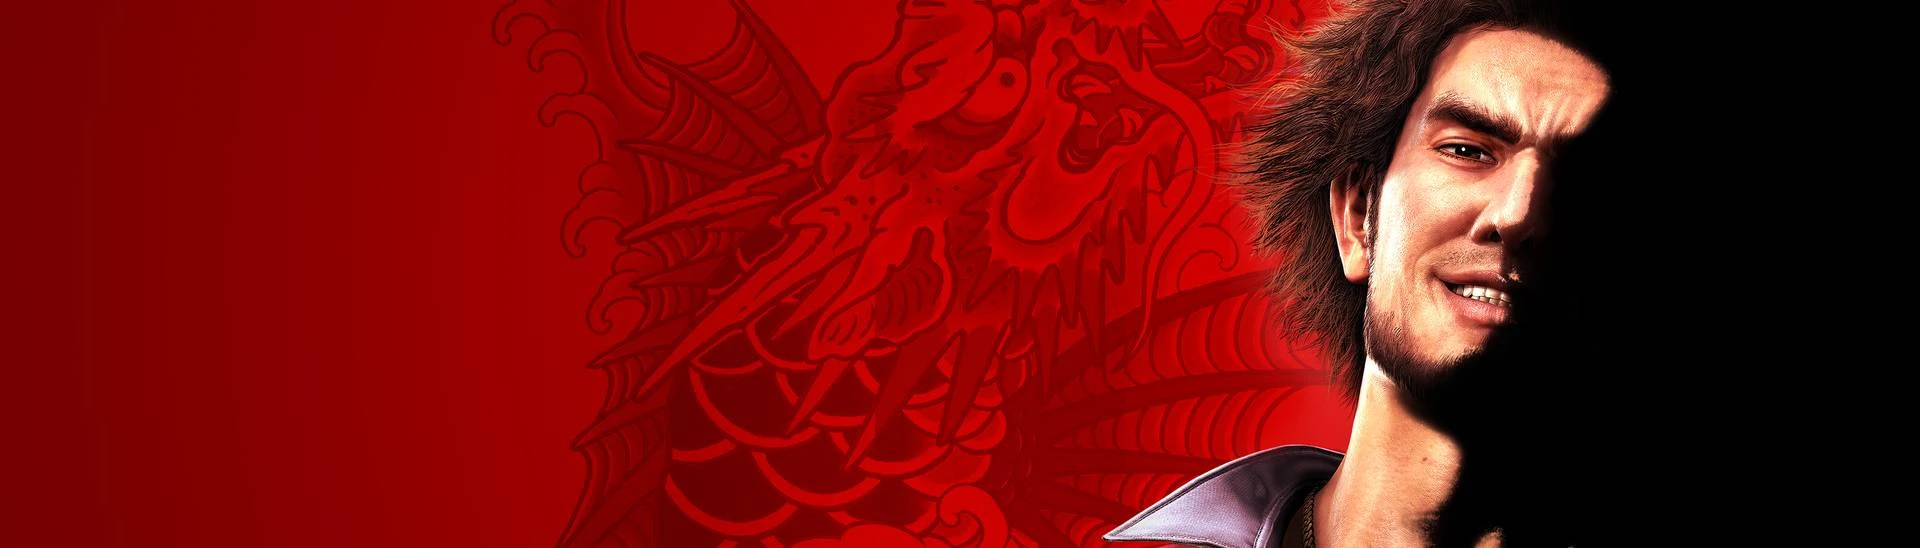 Yakuza: Like a Dragon Nexus - Mods and community